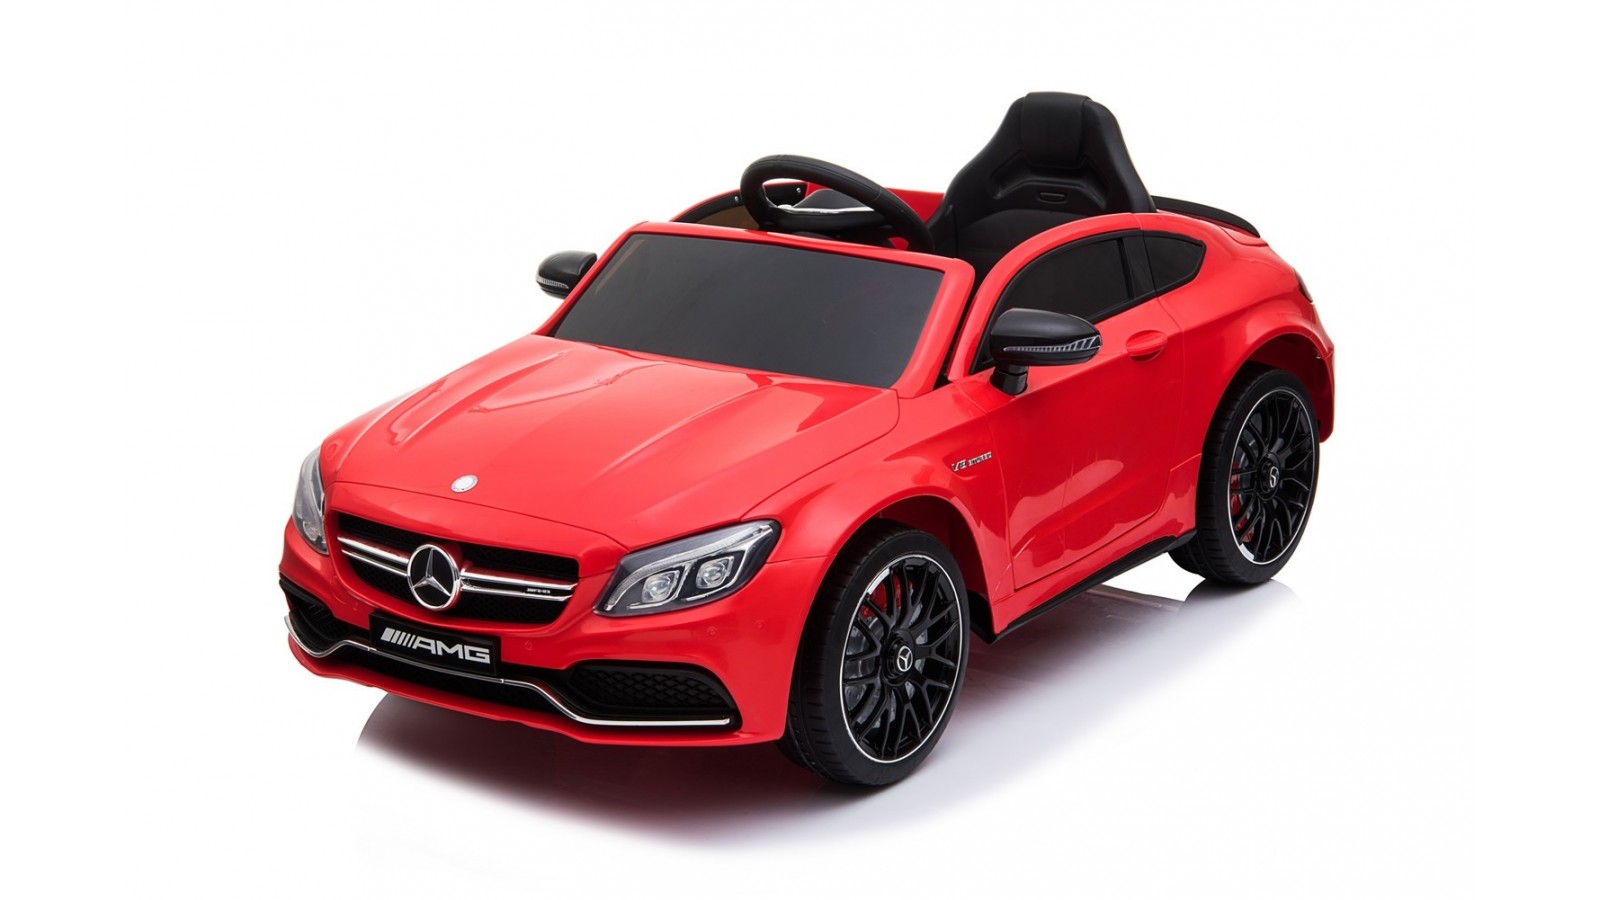 Auto Elettrica per Bambini 12V Mercedes C63 AMG Rossa Porte Apribili con telecomando